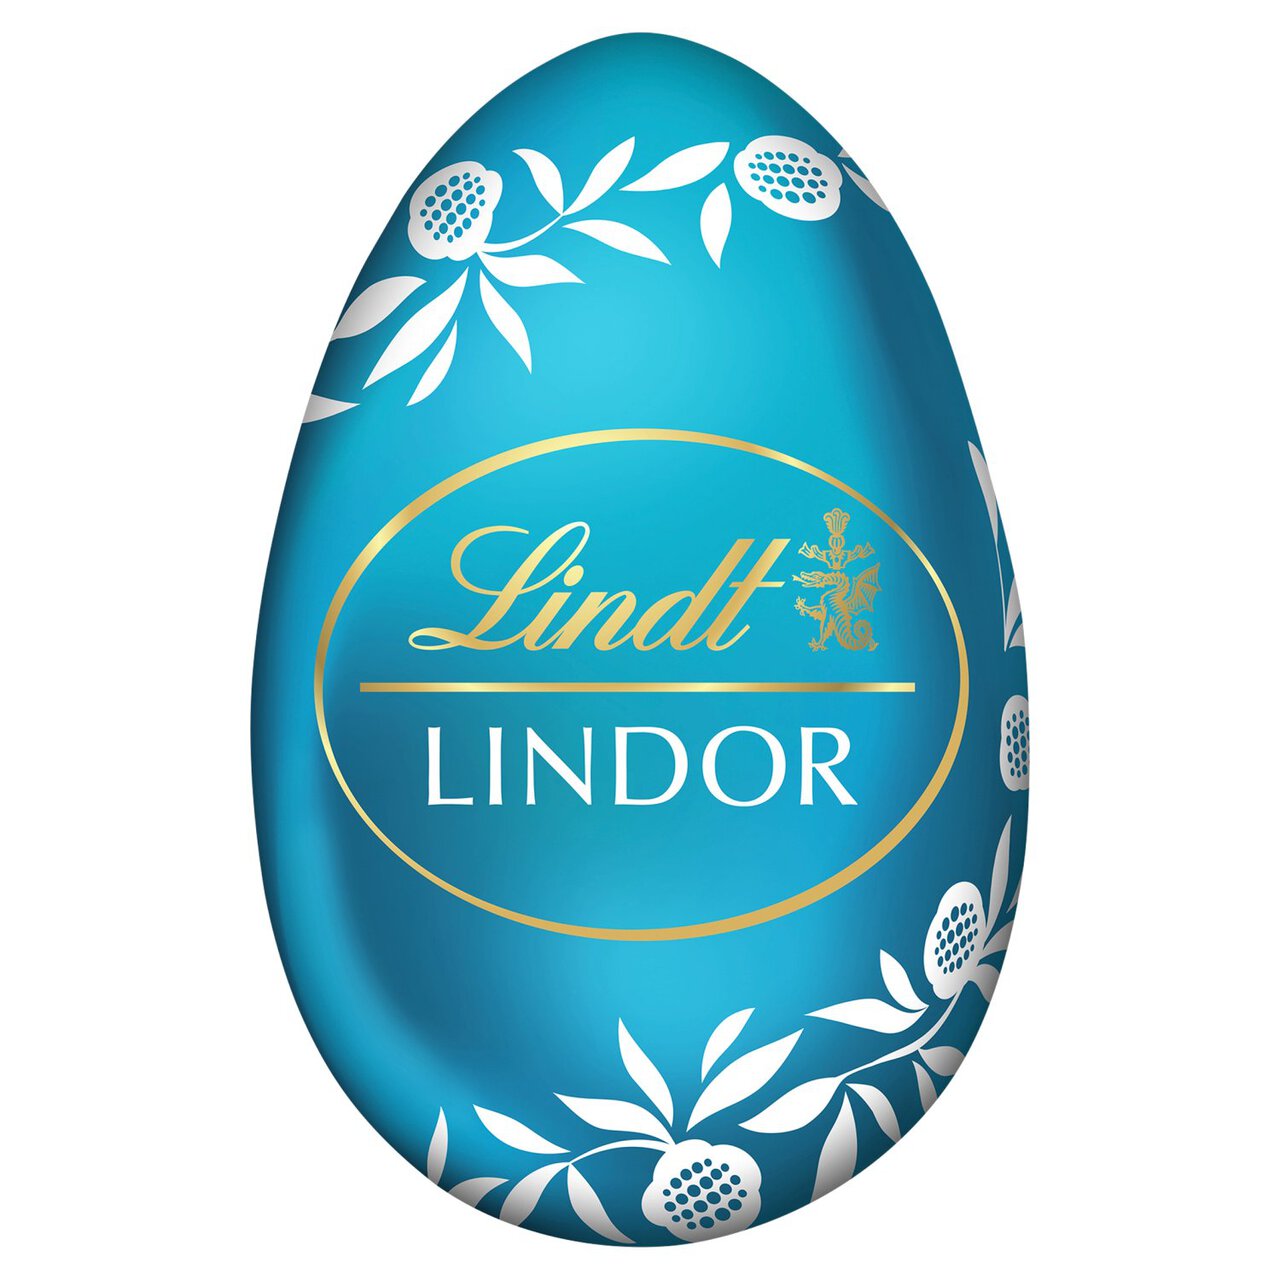 Lindt LINDOR Salted Caramel Chocolate Filled Easter Egg 28g